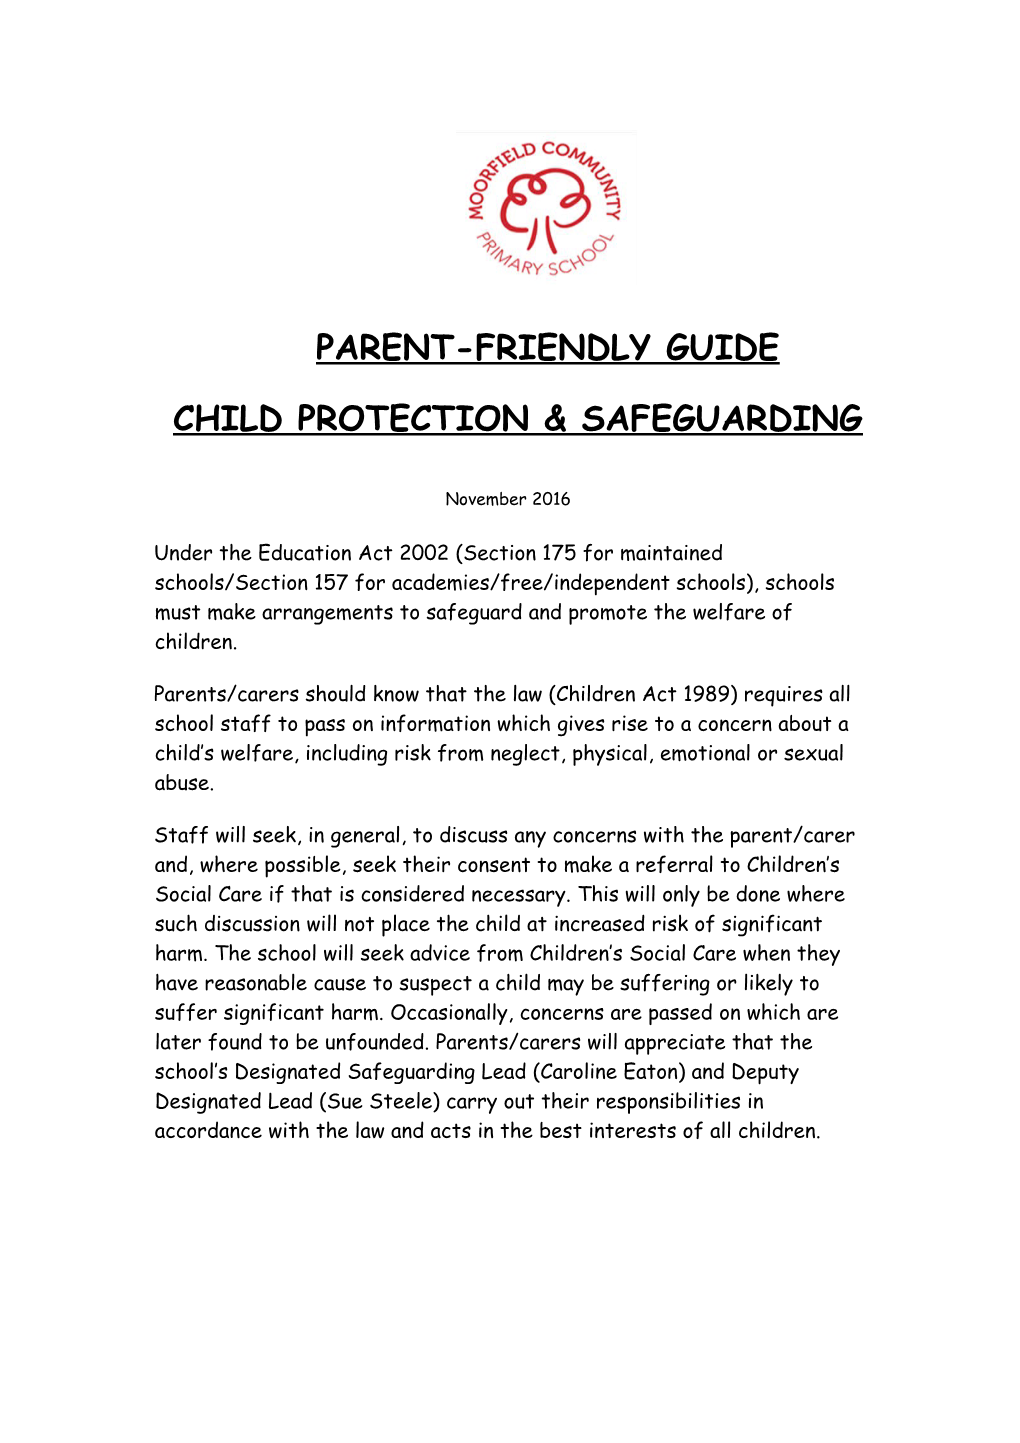 CHILD PROTECTION & SAFEGUARDING Parent-Friendly Version